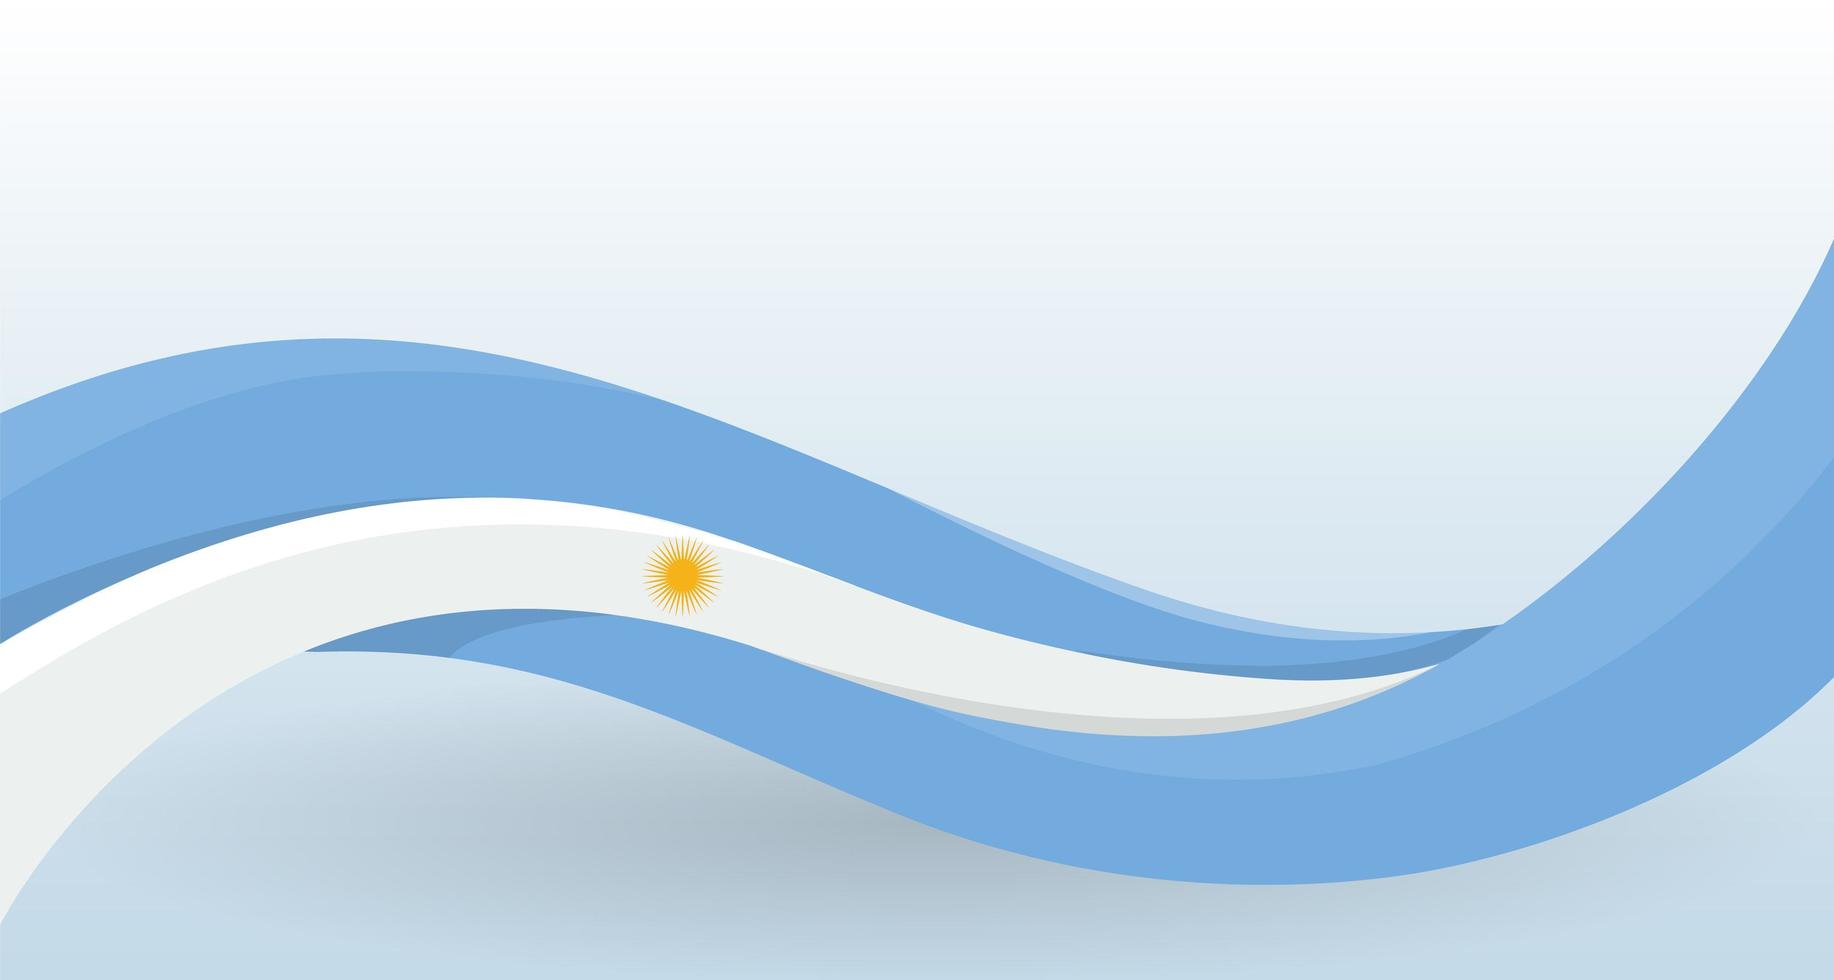 bandeira nacional da argentina. acenando de forma incomum. modelo de design para decoração de panfleto e cartão, cartaz, banner e logotipo. ilustração isolada do vetor. vetor